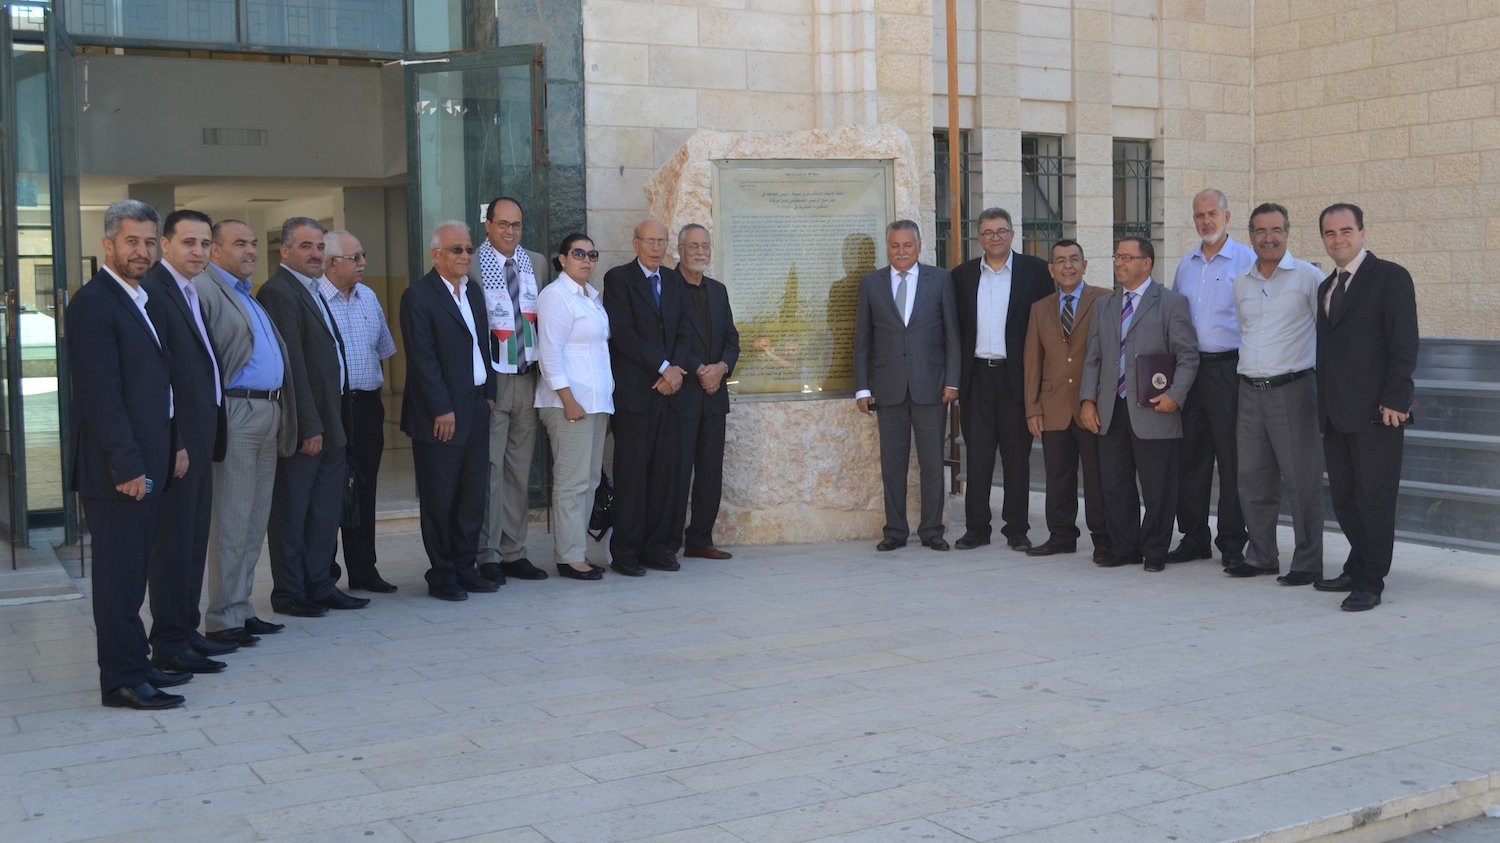 وفد حزب التقدم والاشتراكية أثناء زيارة جامعة القدس أمس الثلاثاء بحضور نواب الرئيس وعمداء بعض الكليات.
 
